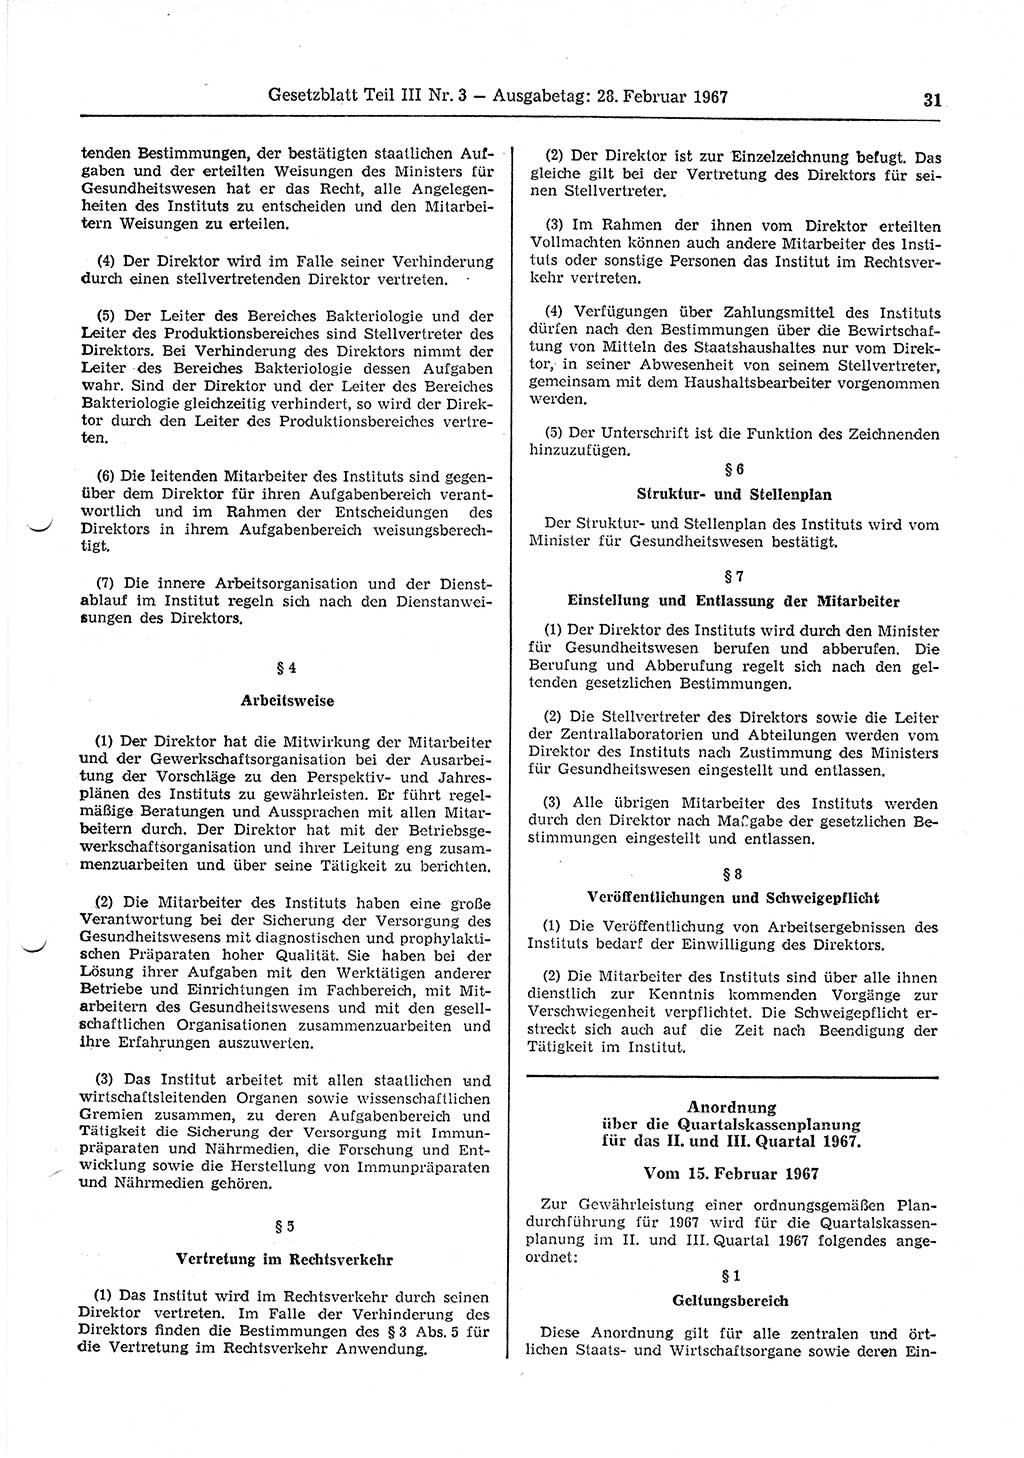 Gesetzblatt (GBl.) der Deutschen Demokratischen Republik (DDR) Teil ⅠⅠⅠ 1967, Seite 31 (GBl. DDR ⅠⅠⅠ 1967, S. 31)